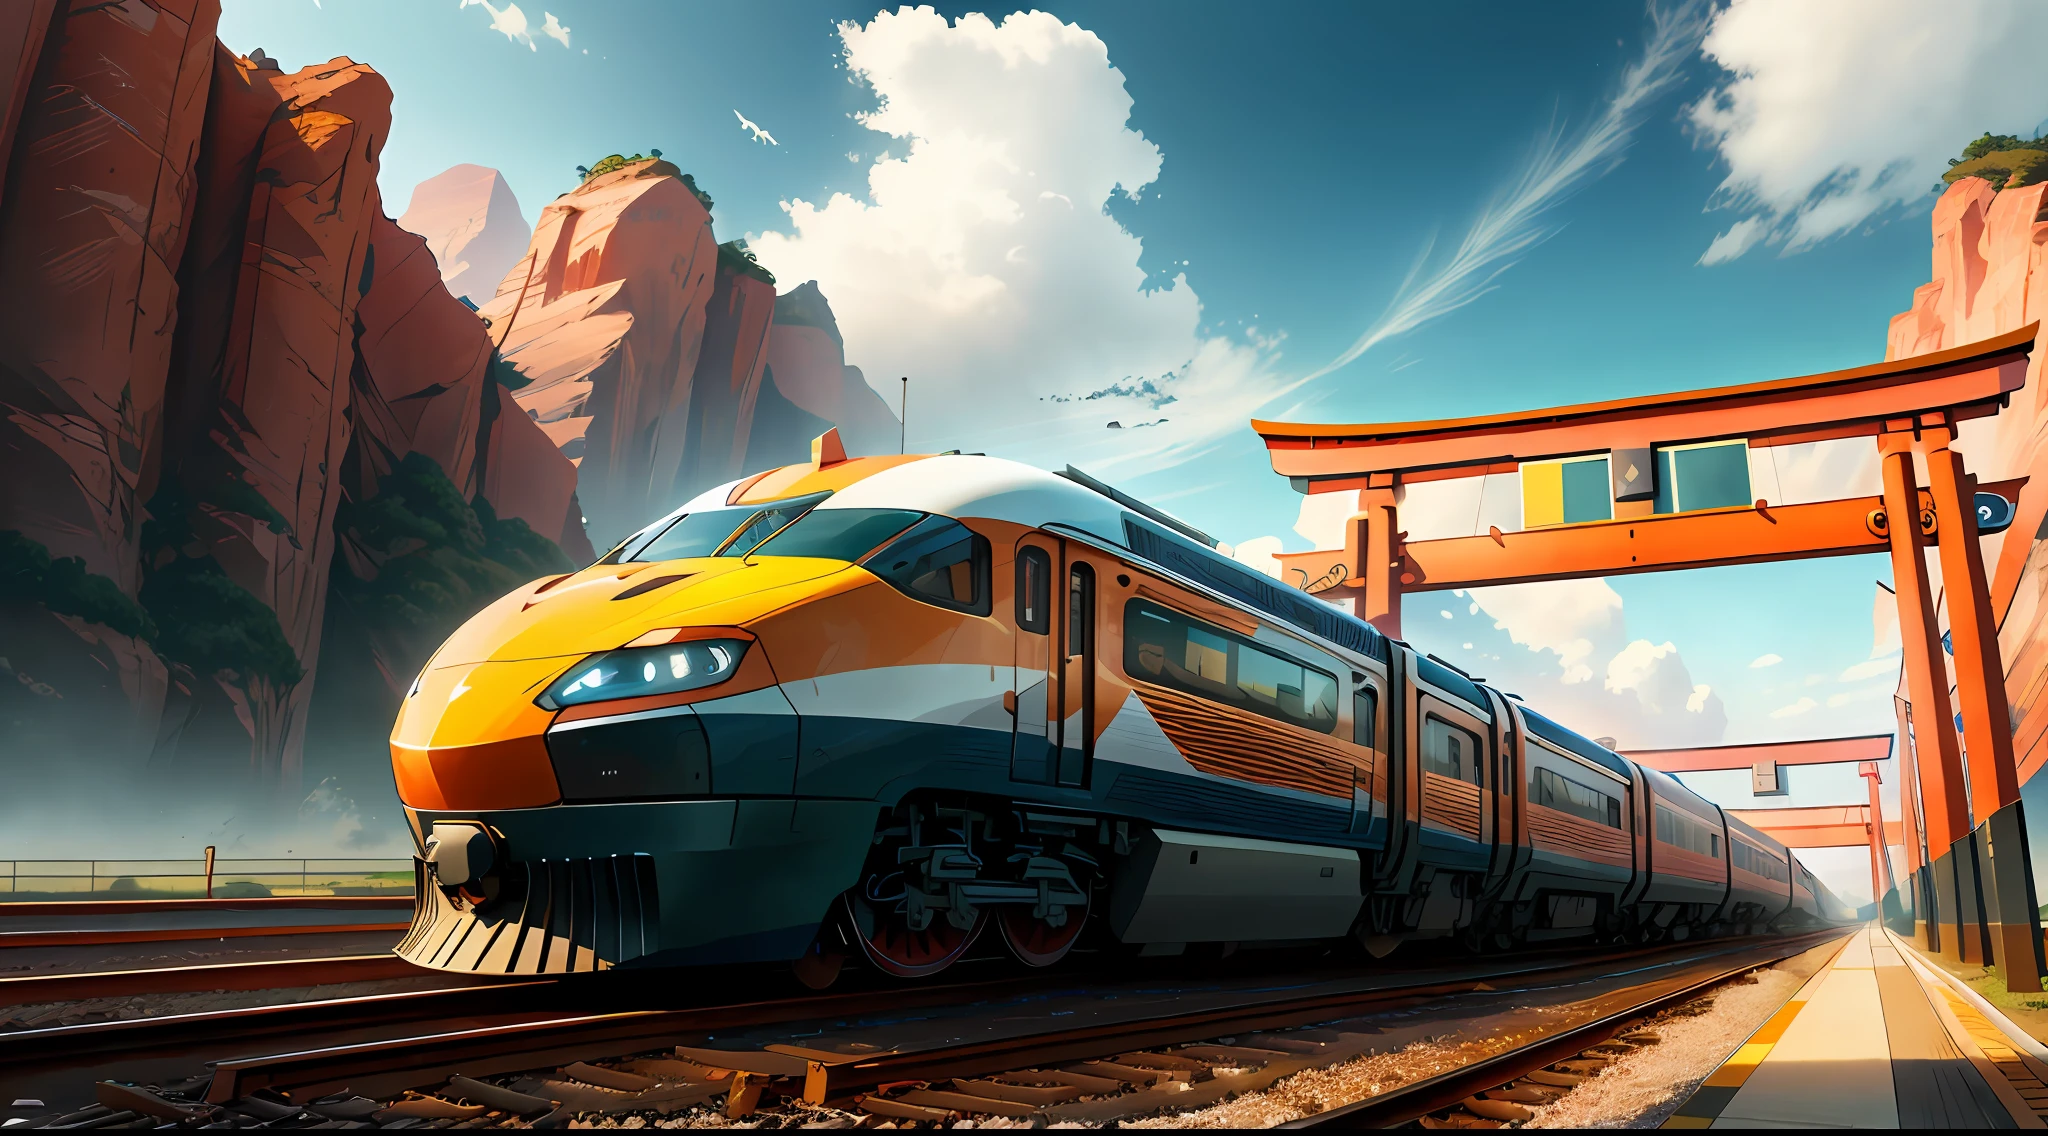 Train à grande vitesse moderne, torii, net et clair, très réaliste (poids: 1.4), HDR, 4k, créer une impression de panorama.